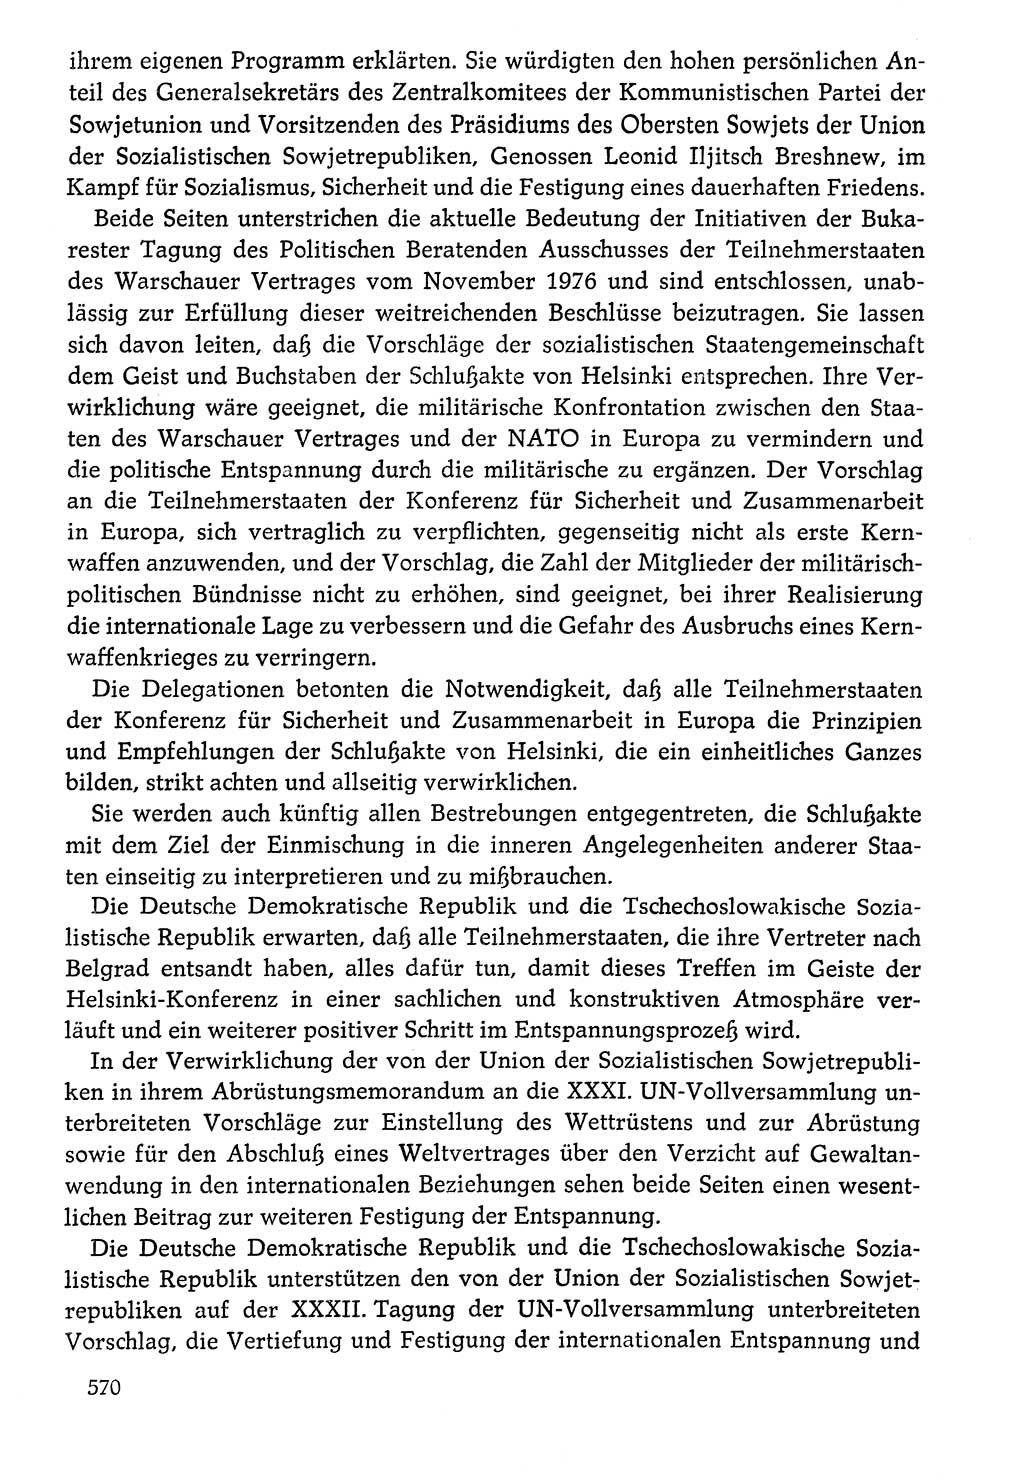 Dokumente der Sozialistischen Einheitspartei Deutschlands (SED) [Deutsche Demokratische Republik (DDR)] 1976-1977, Seite 570 (Dok. SED DDR 1976-1977, S. 570)